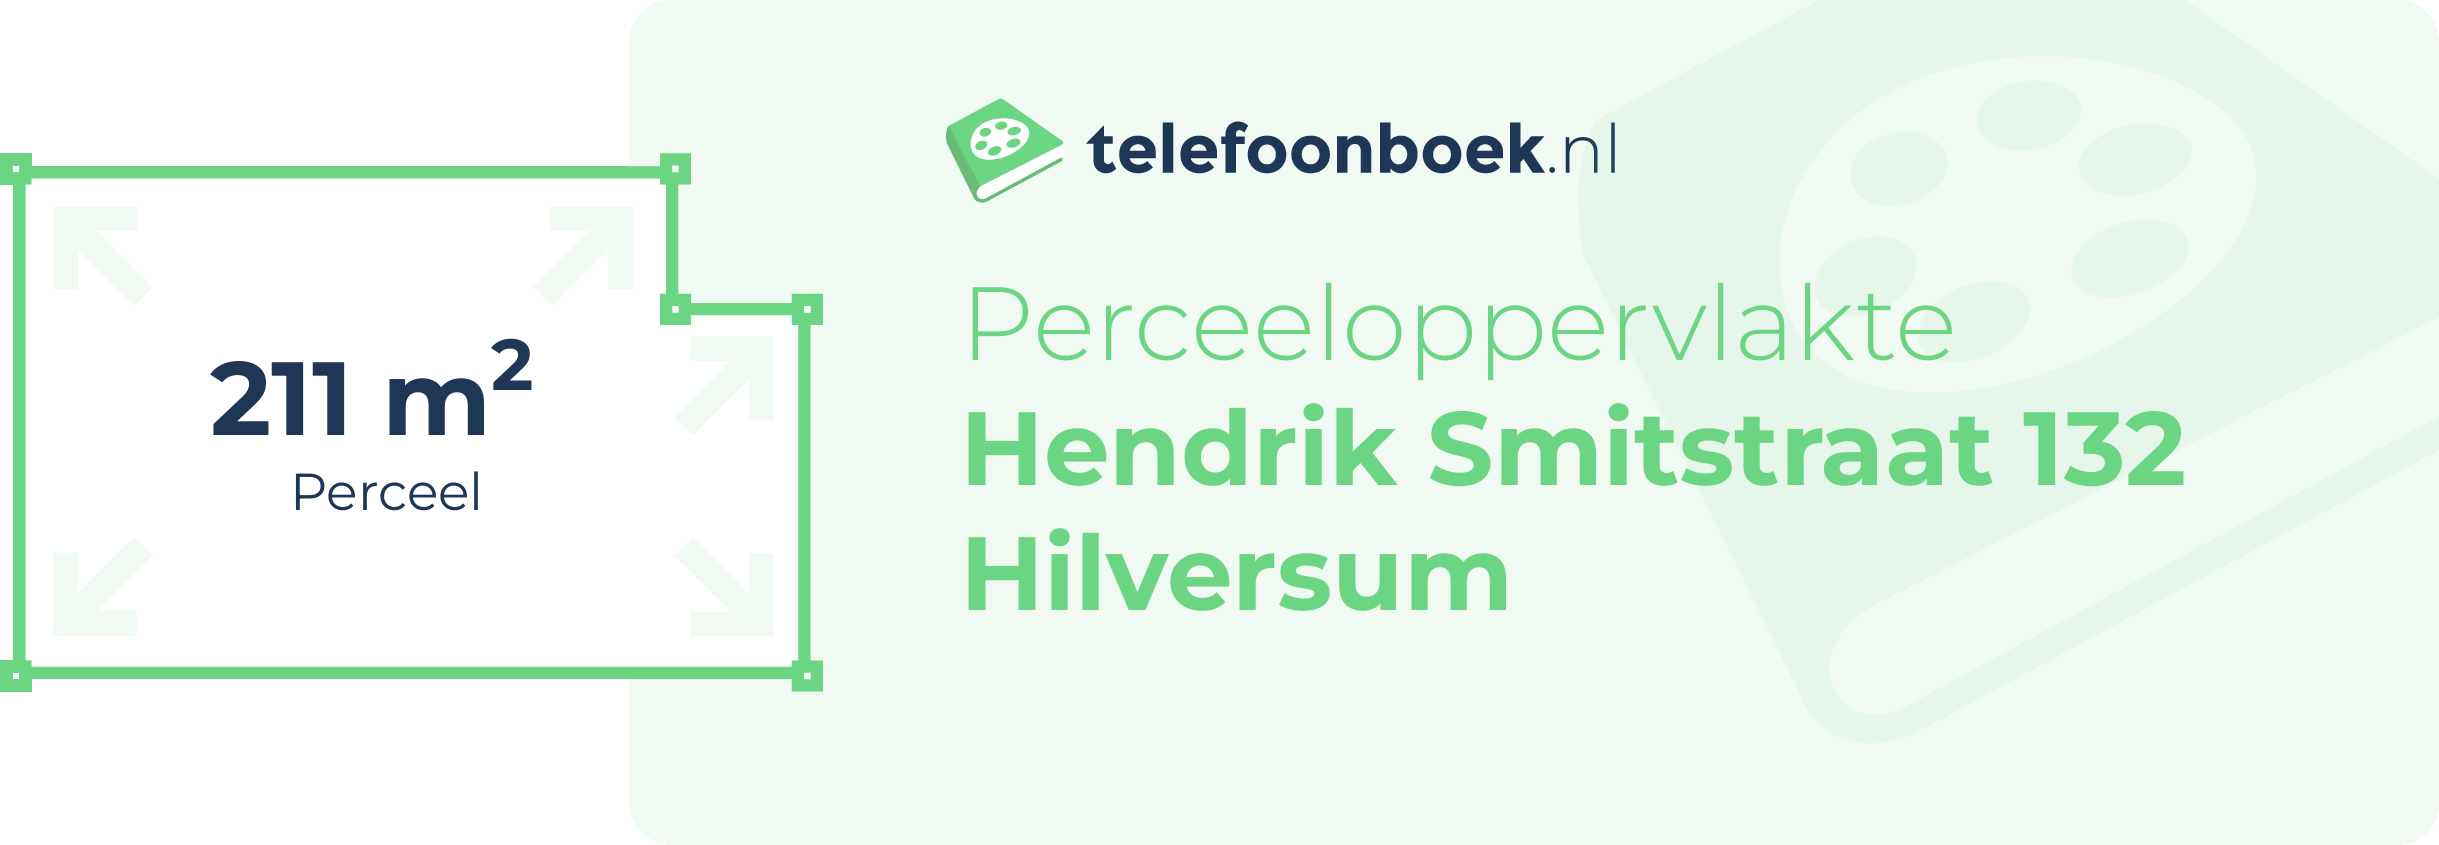 Perceeloppervlakte Hendrik Smitstraat 132 Hilversum